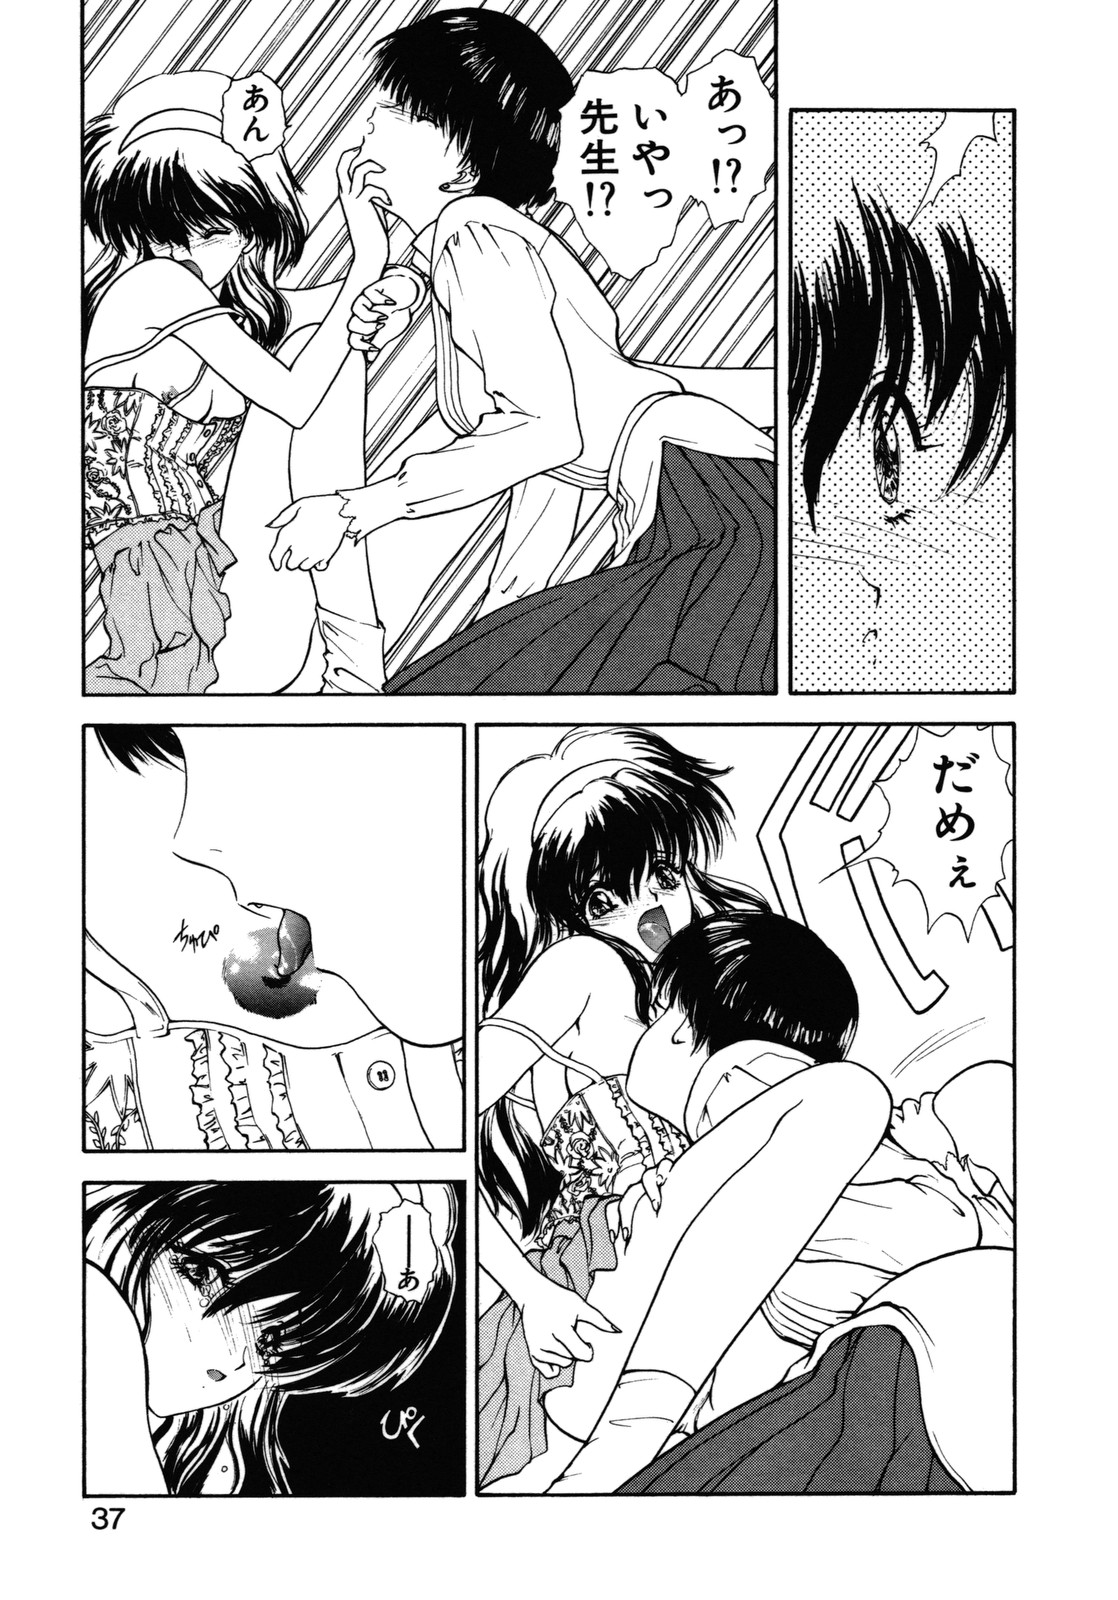 [Utatane Hiroyuki] COUNT DOWN page 38 full